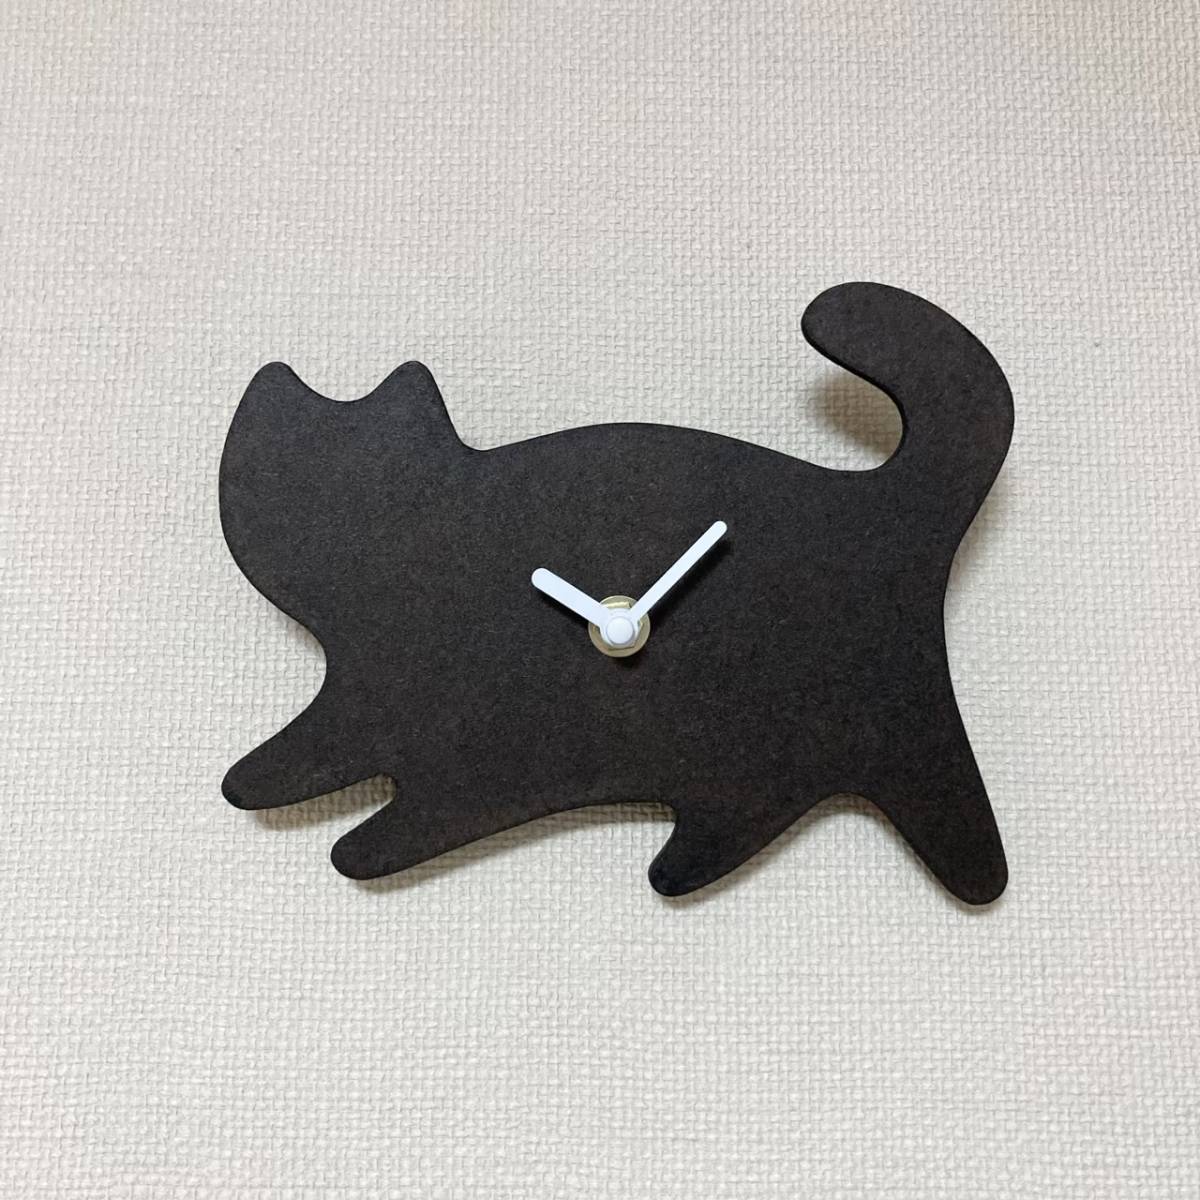 黒猫 掛時計 クロネコ ハンドメイド オブジェ, 置時計, 掛時計, 掛時計, 柱時計, アナログ